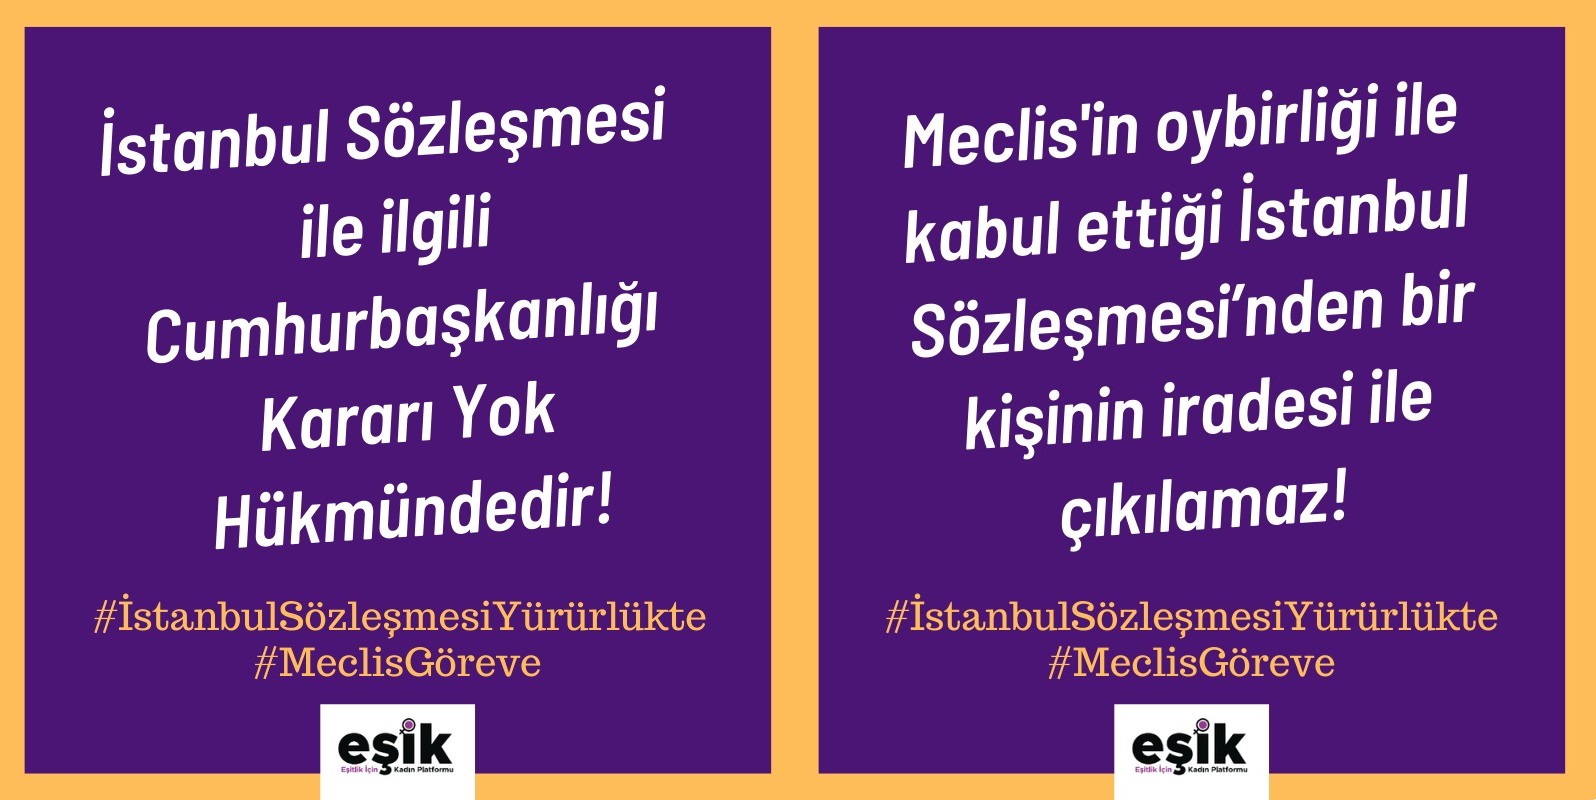 “İstanbul Sözleşmesi ile ilgili Cumhurbaşkanlığı kararı yok hükmündedir, sözleşme yürürlüktedir” Kaos GL - LGBTİ+ Haber Portalı